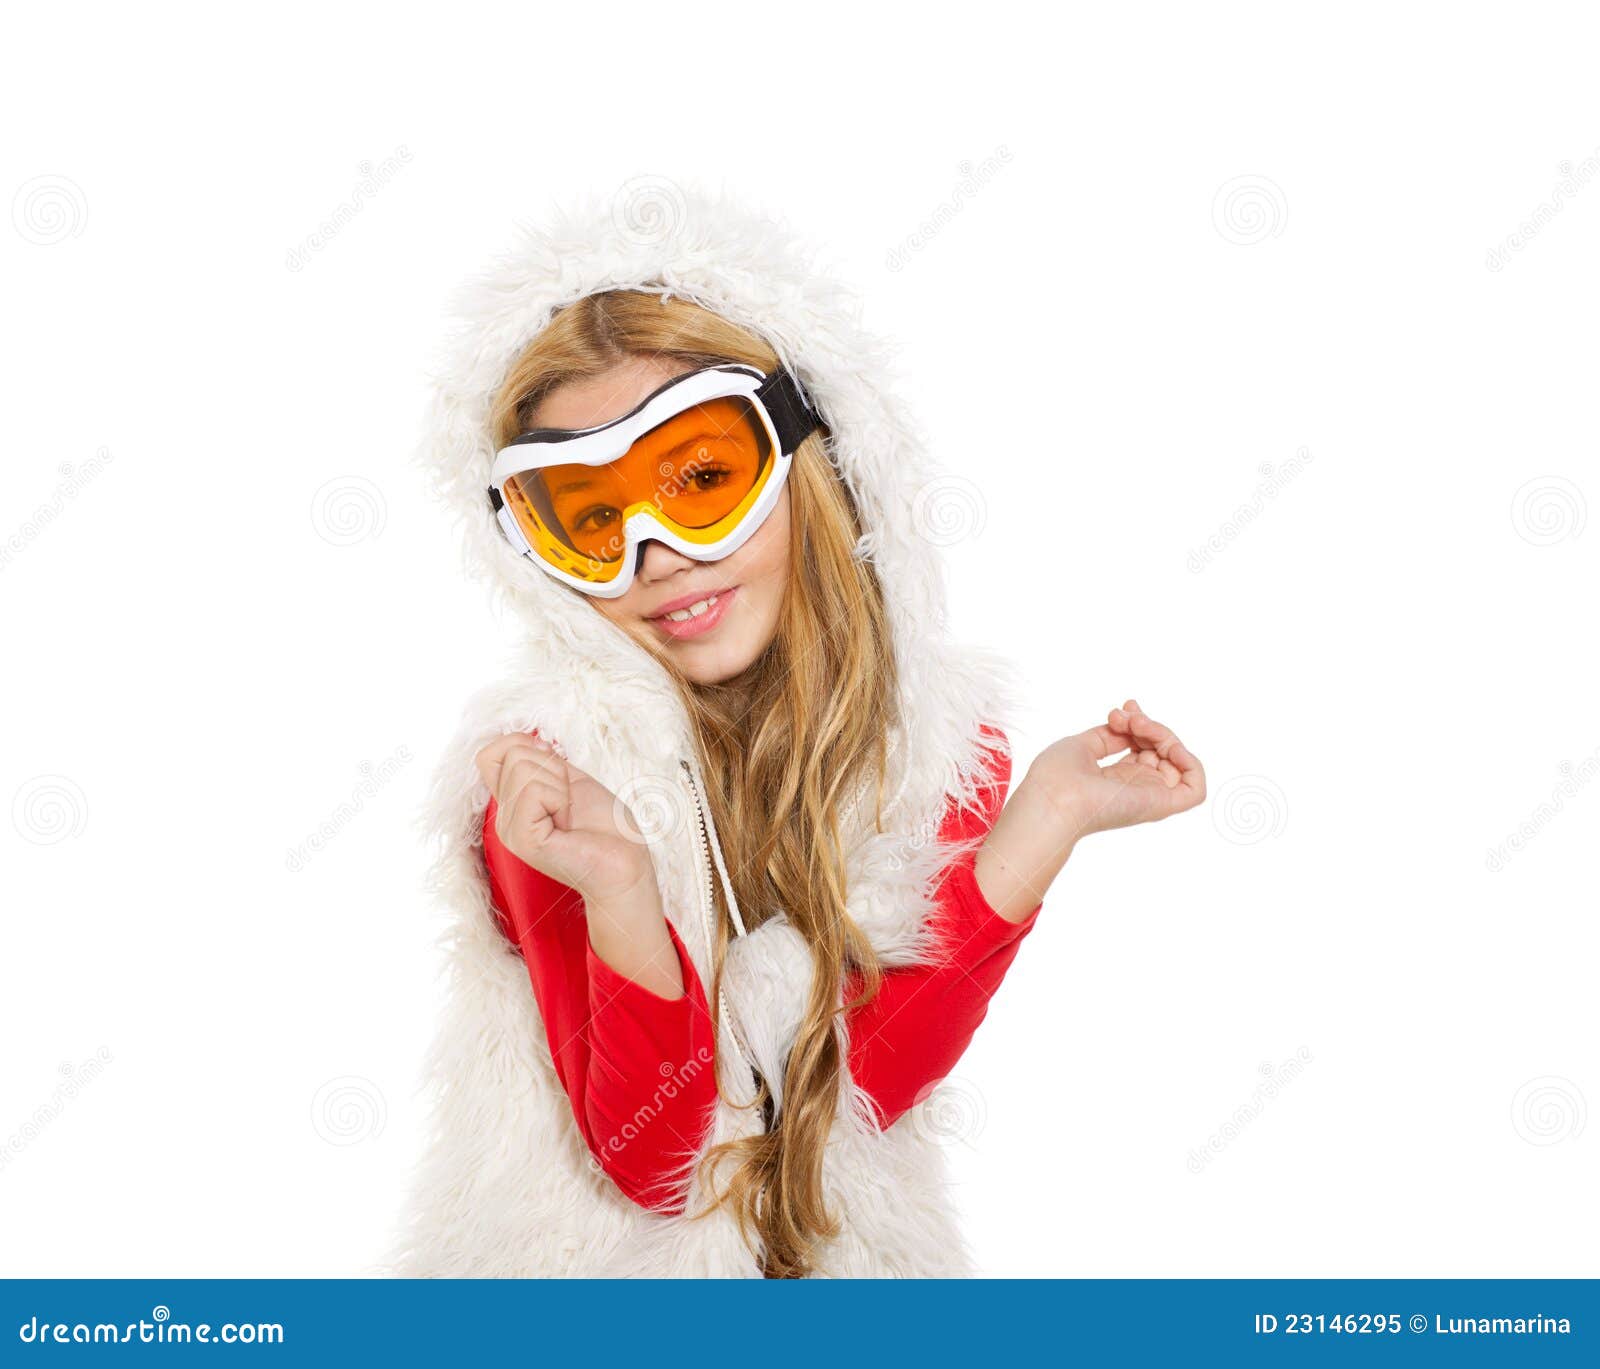 kid girl snow winter glasses white fur 23146295